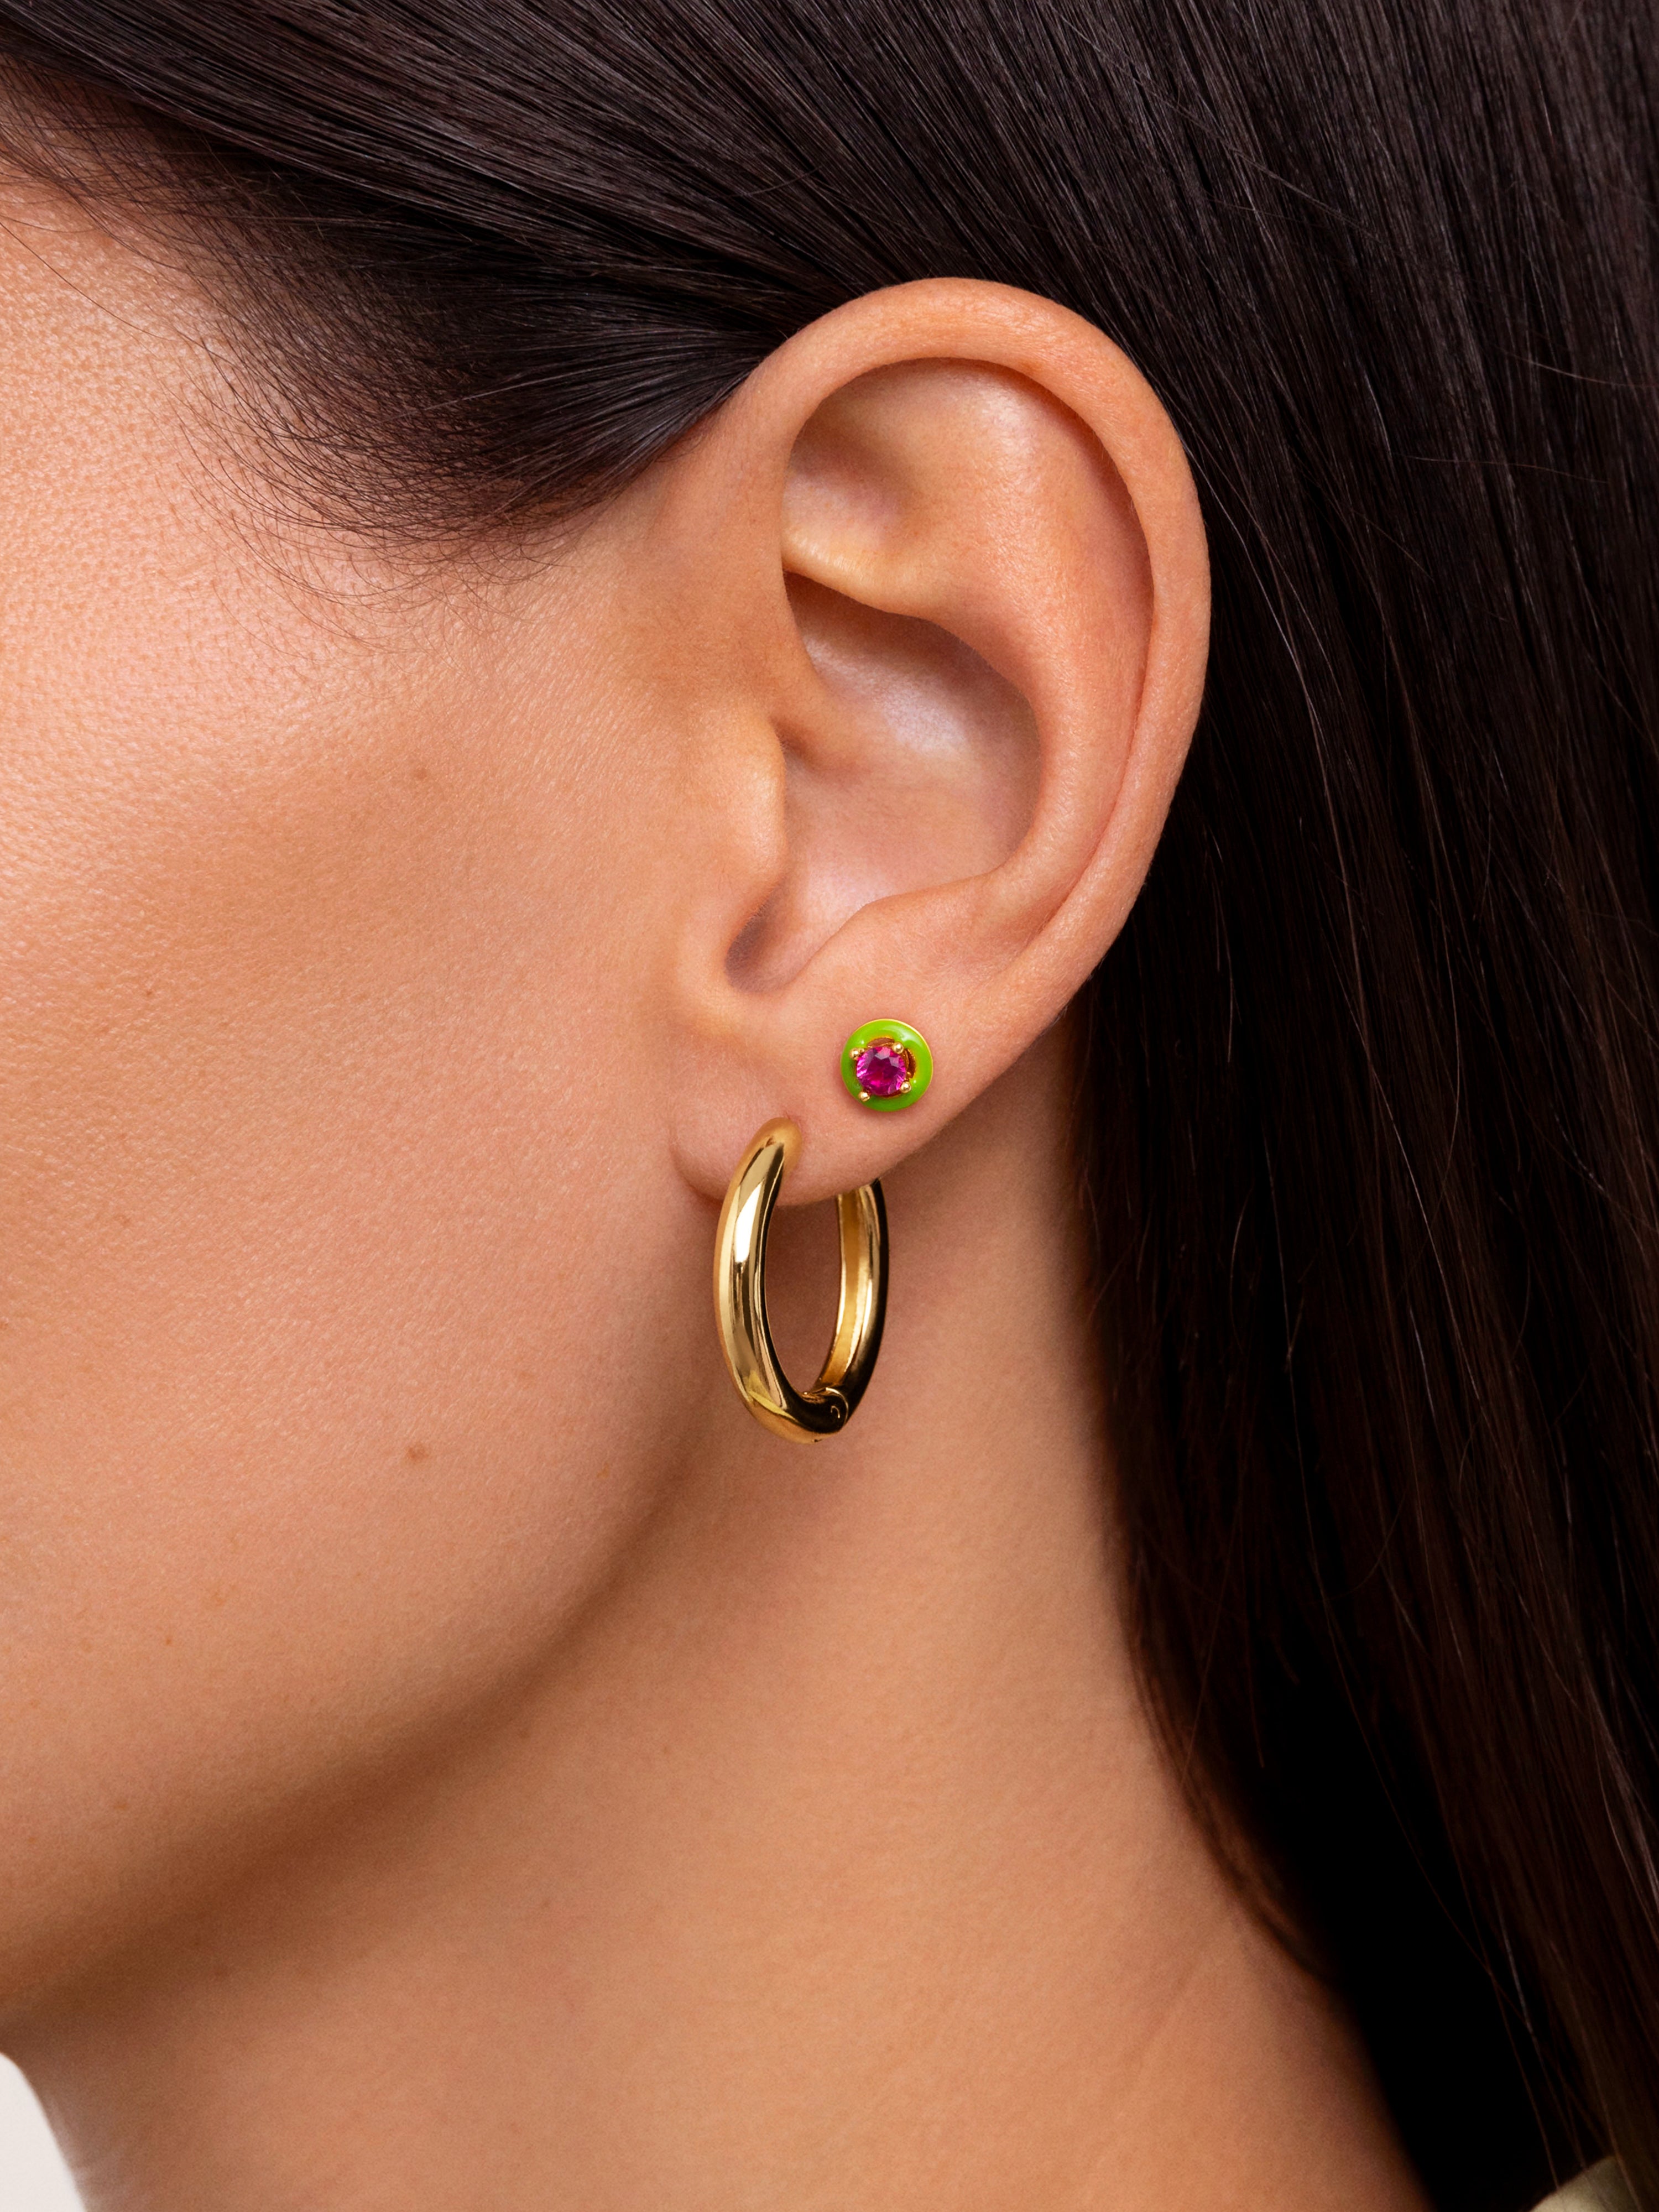 Green Pop Signle Gold Earrings